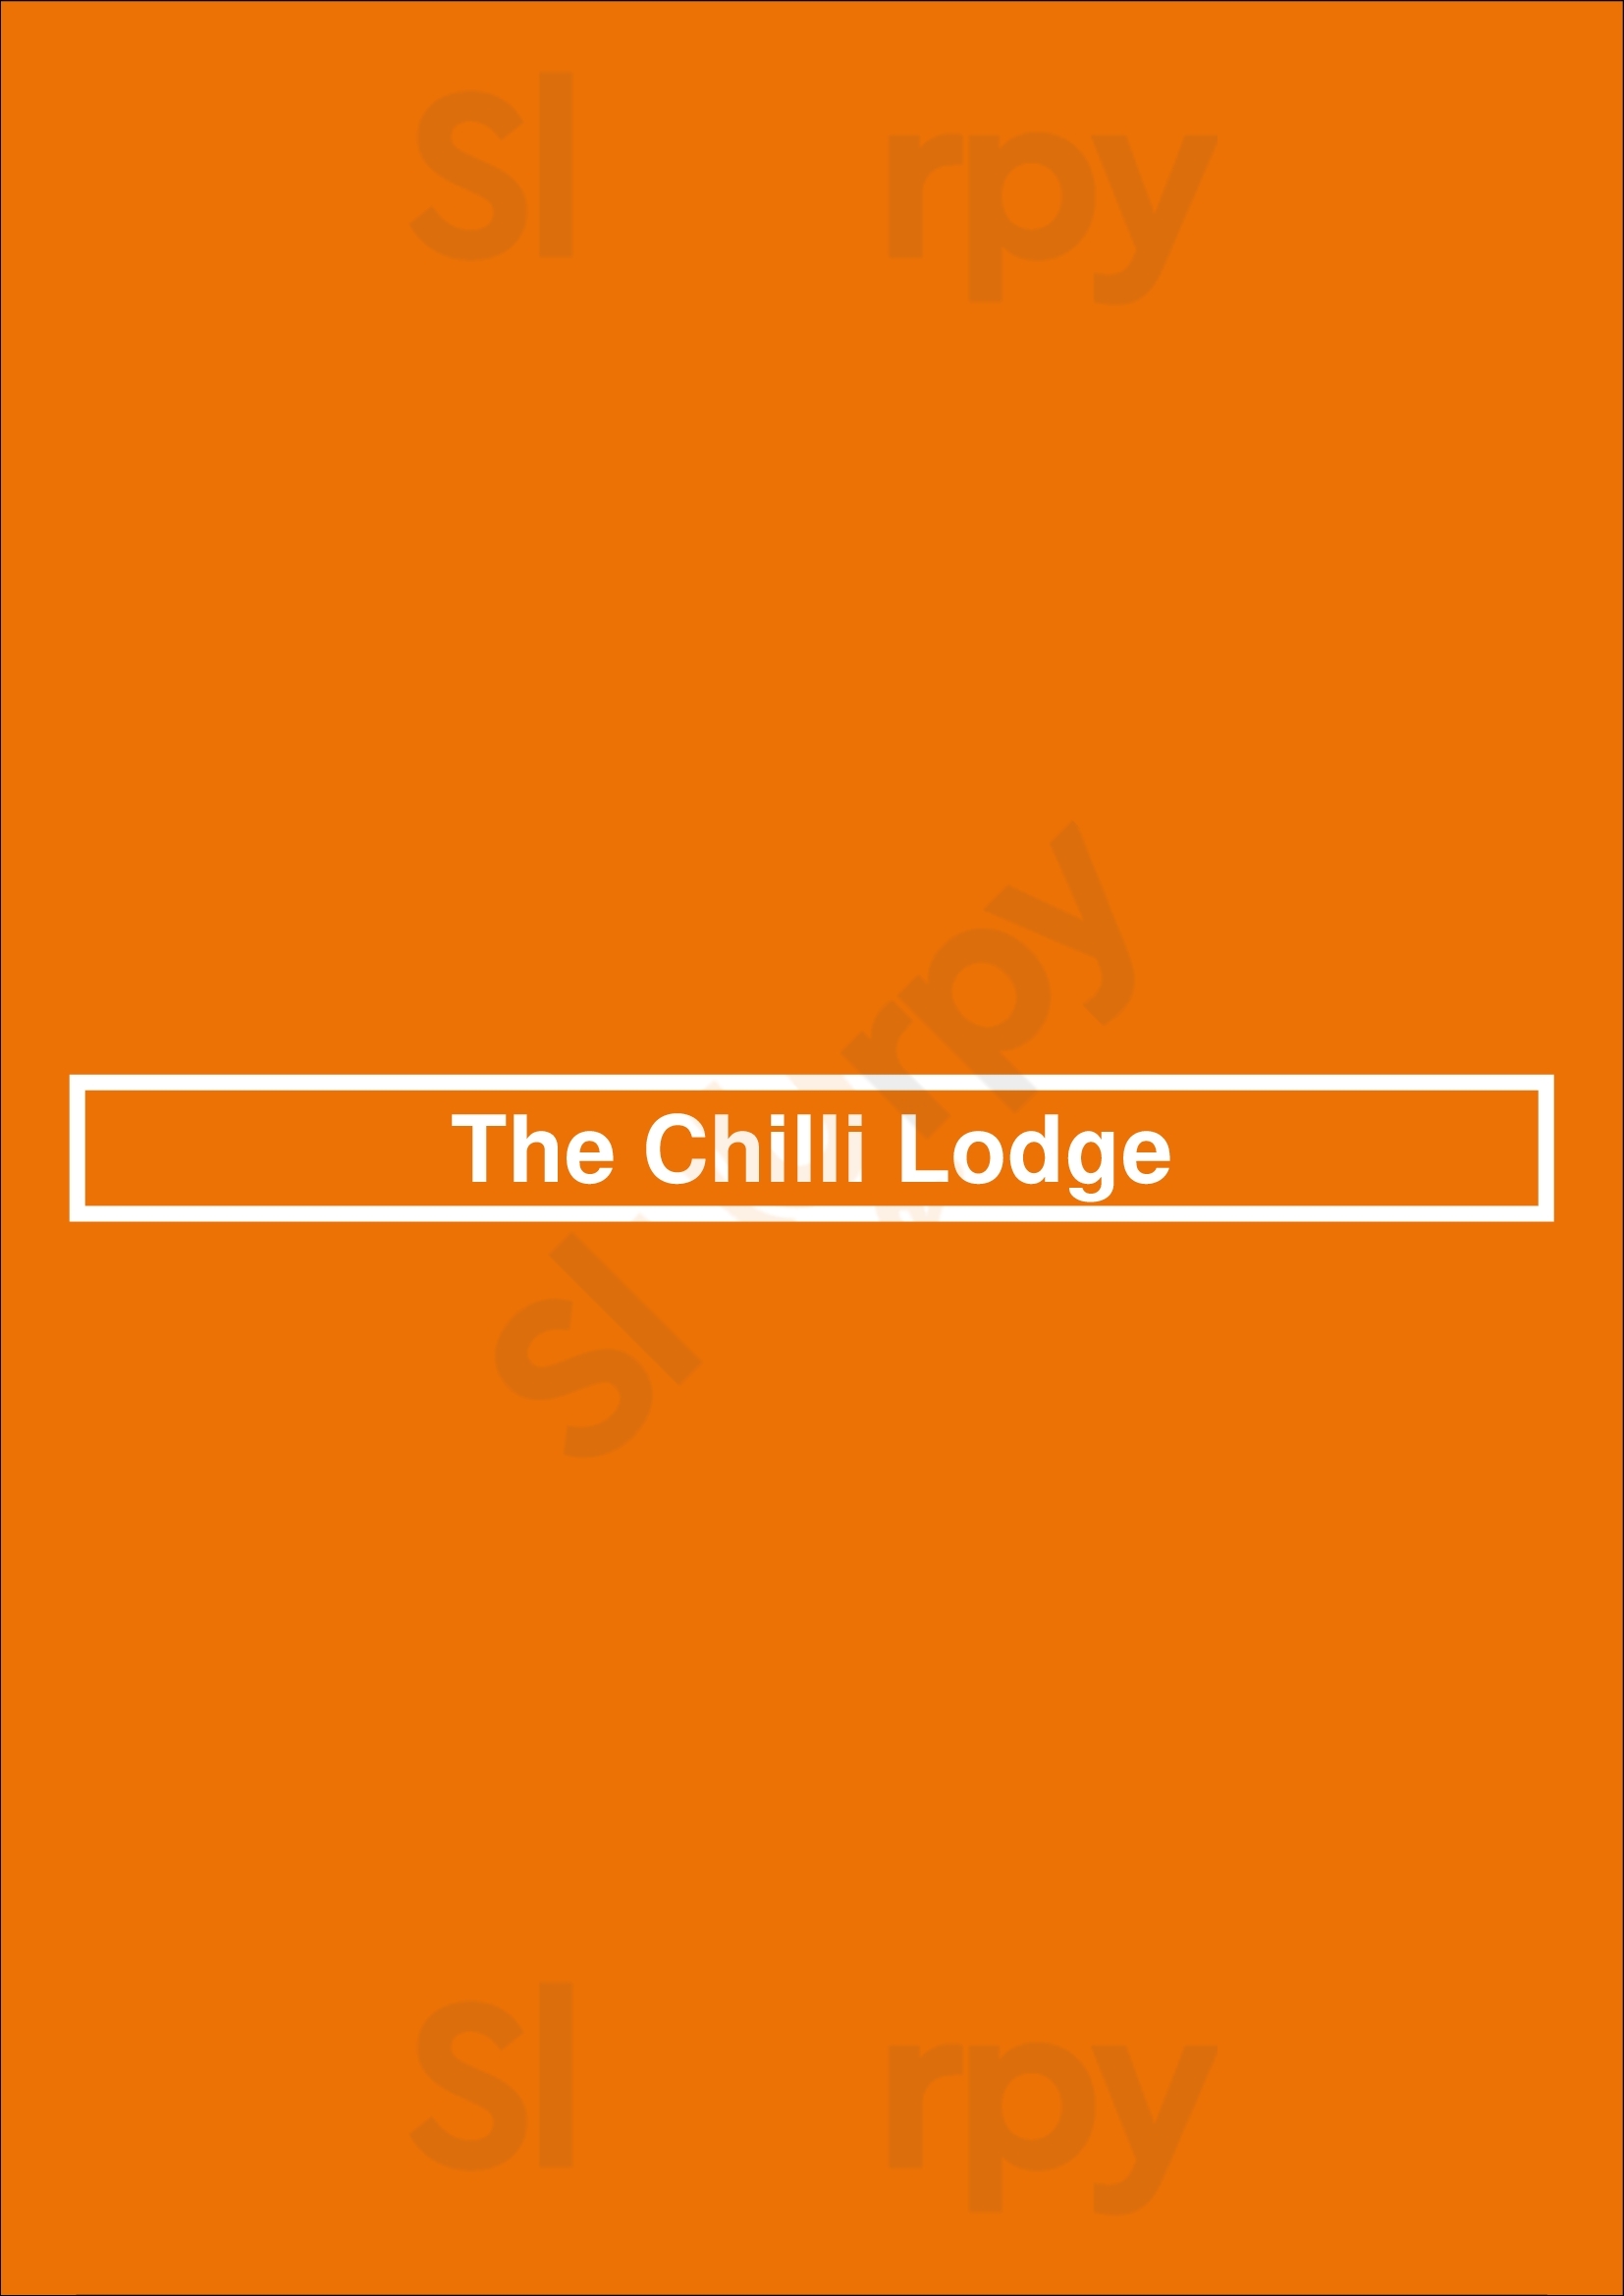 The Chilli Lodge Barnsley Menu - 1